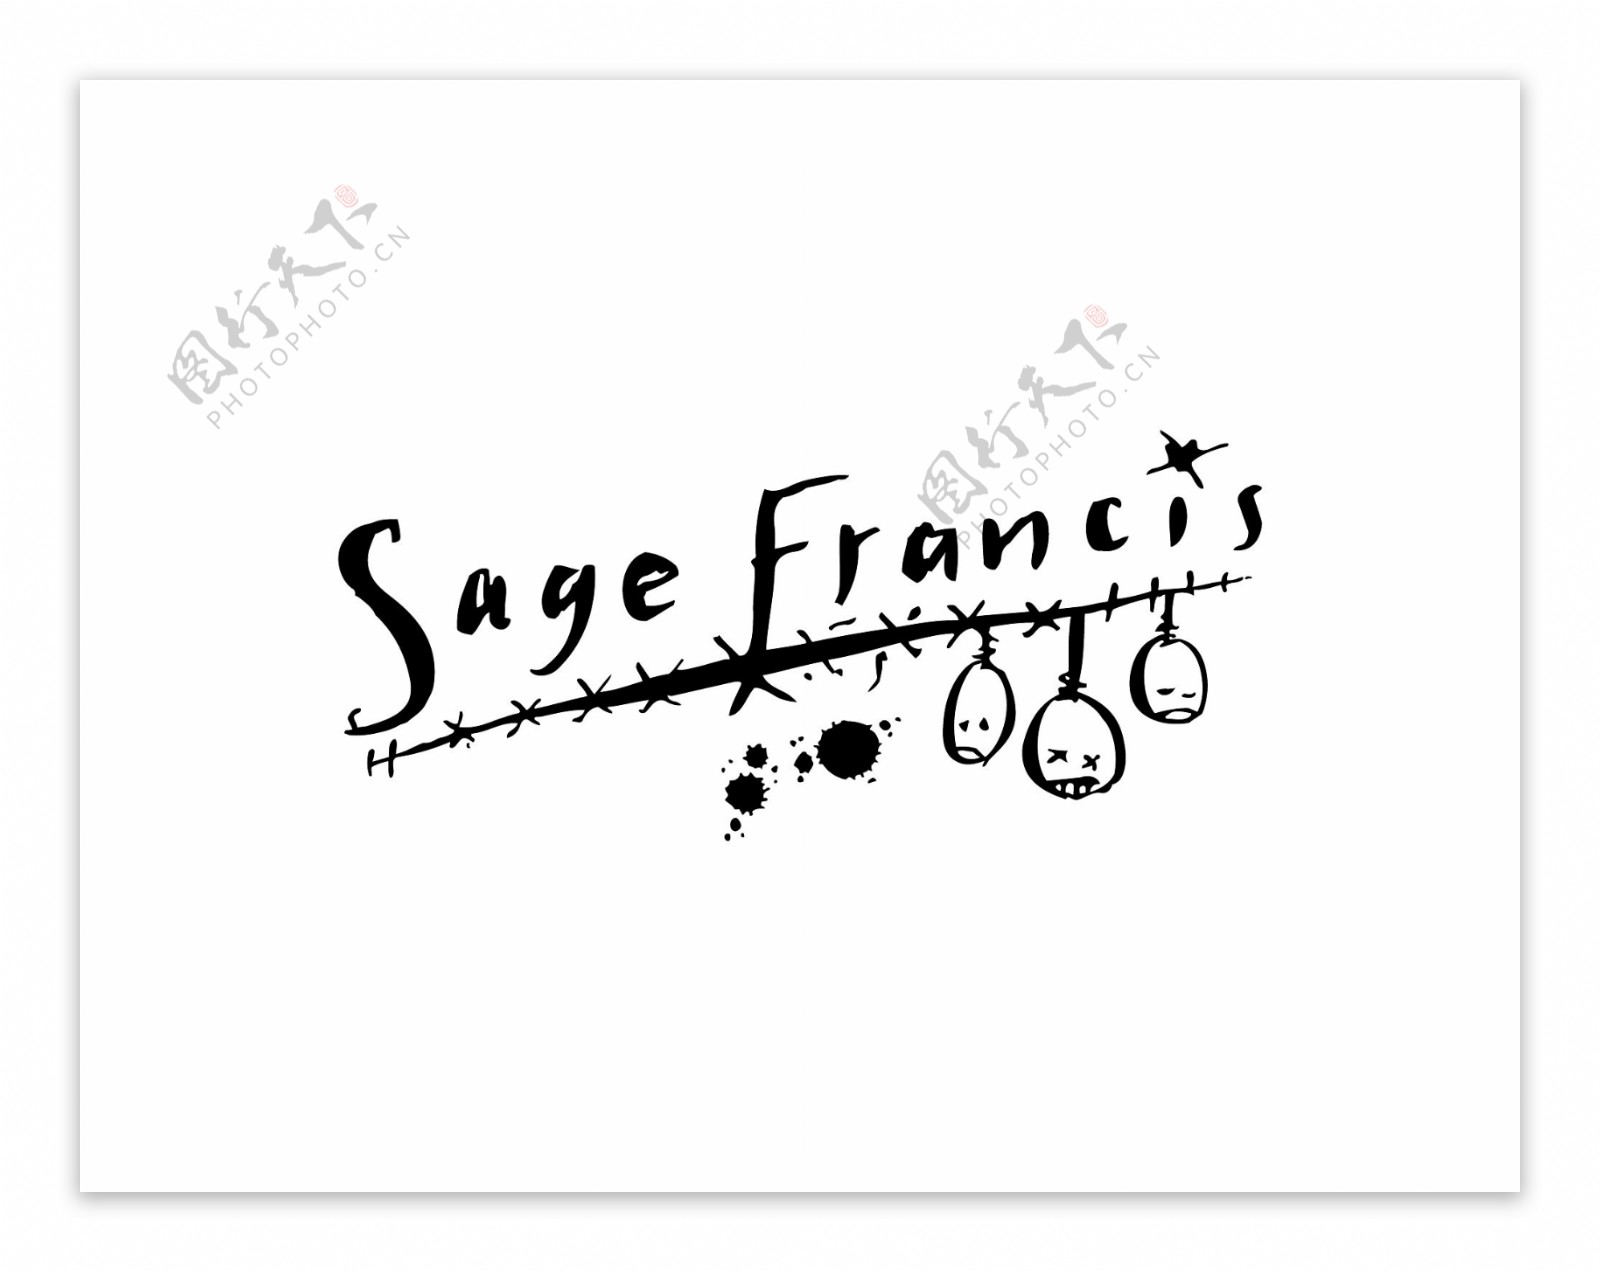 SageFrancislogo设计欣赏SageFrancis唱片公司标志下载标志设计欣赏